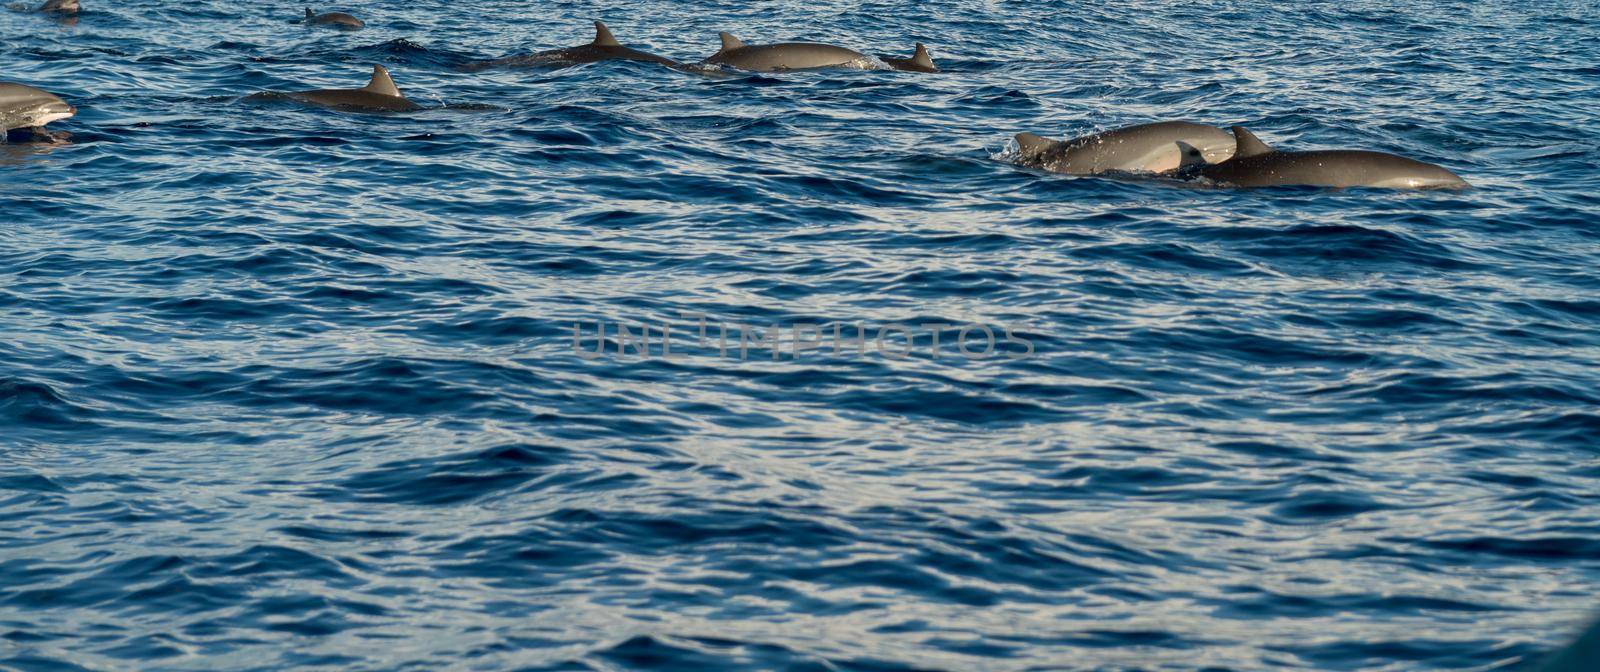 Dolphins in Pacific Ocean by nikitabuida